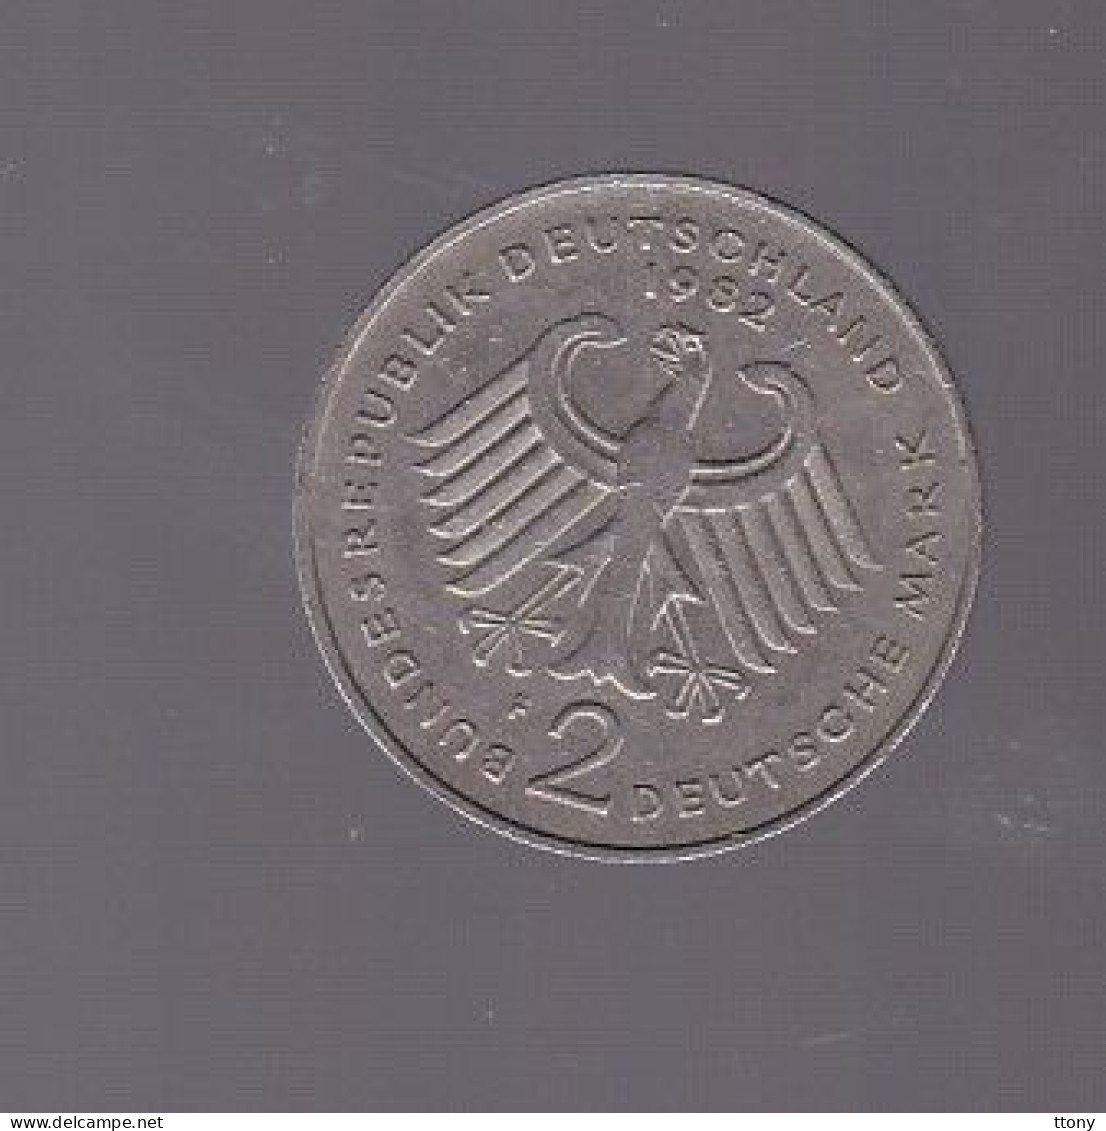 4 pièces  2 mark  F  . D  . J   1988  - 1974 - 1971 -1982   bundes  répuplik  Deutschland